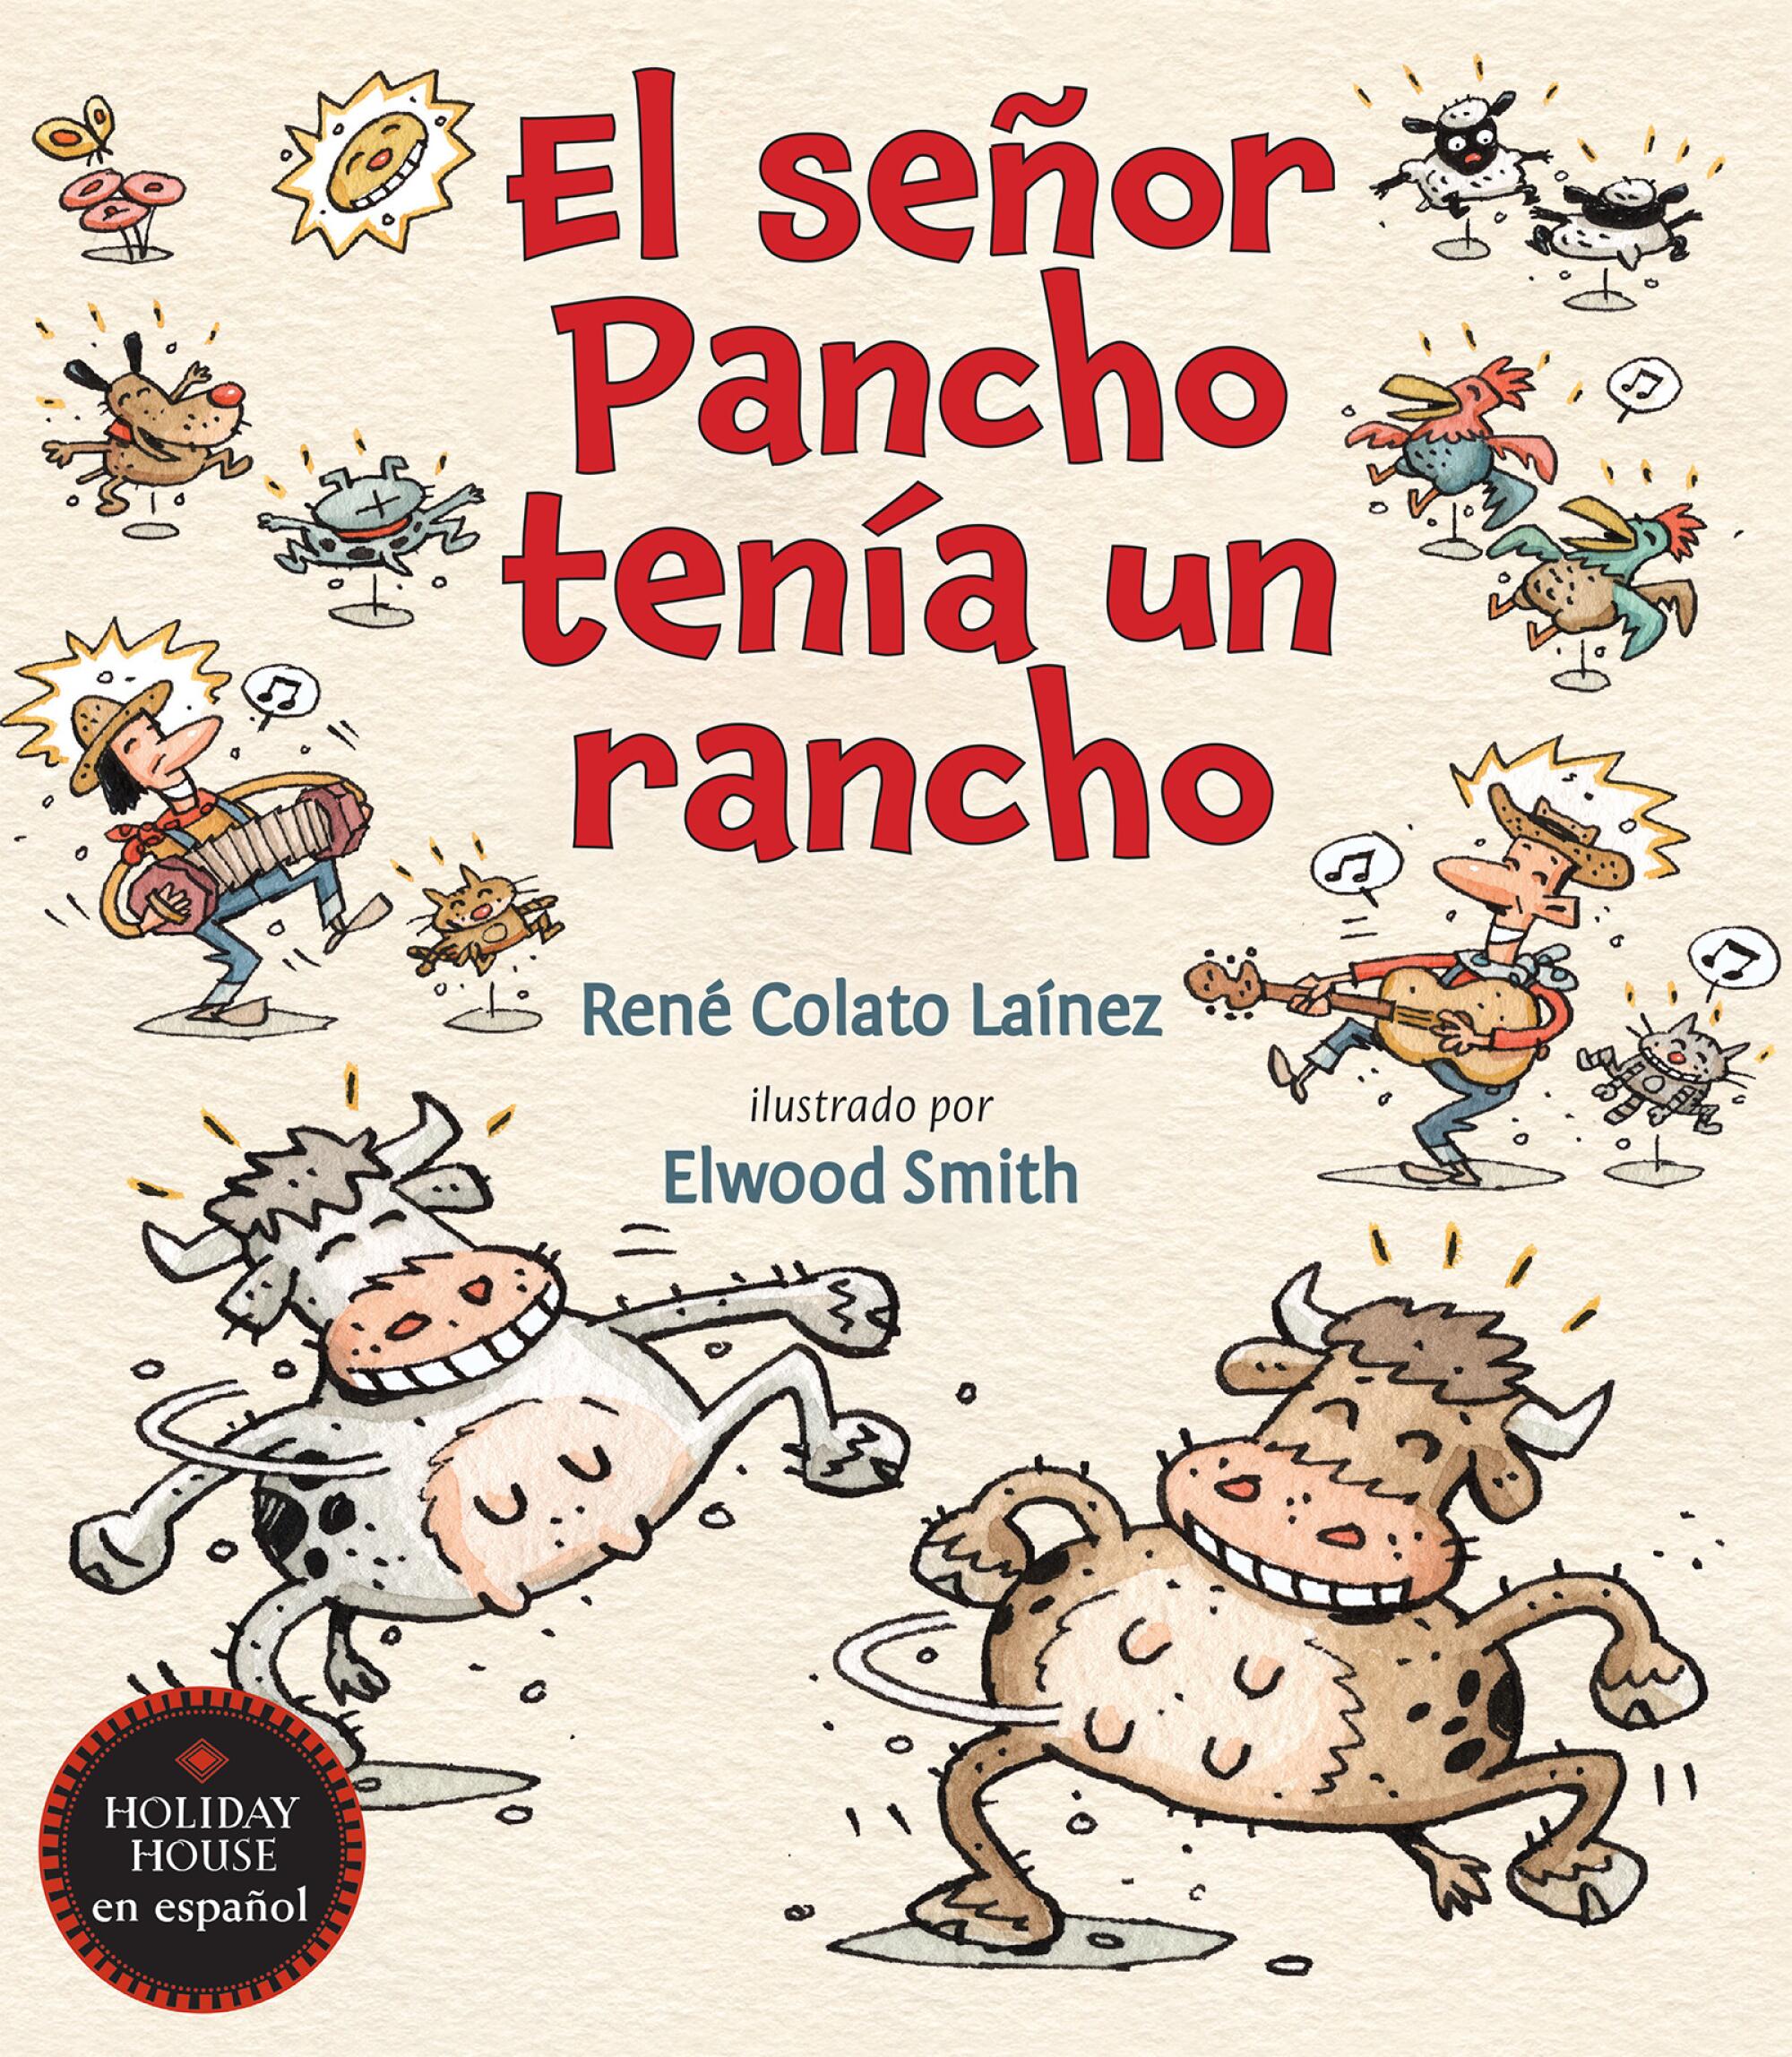 El Seor Pancho tenía un Rancho